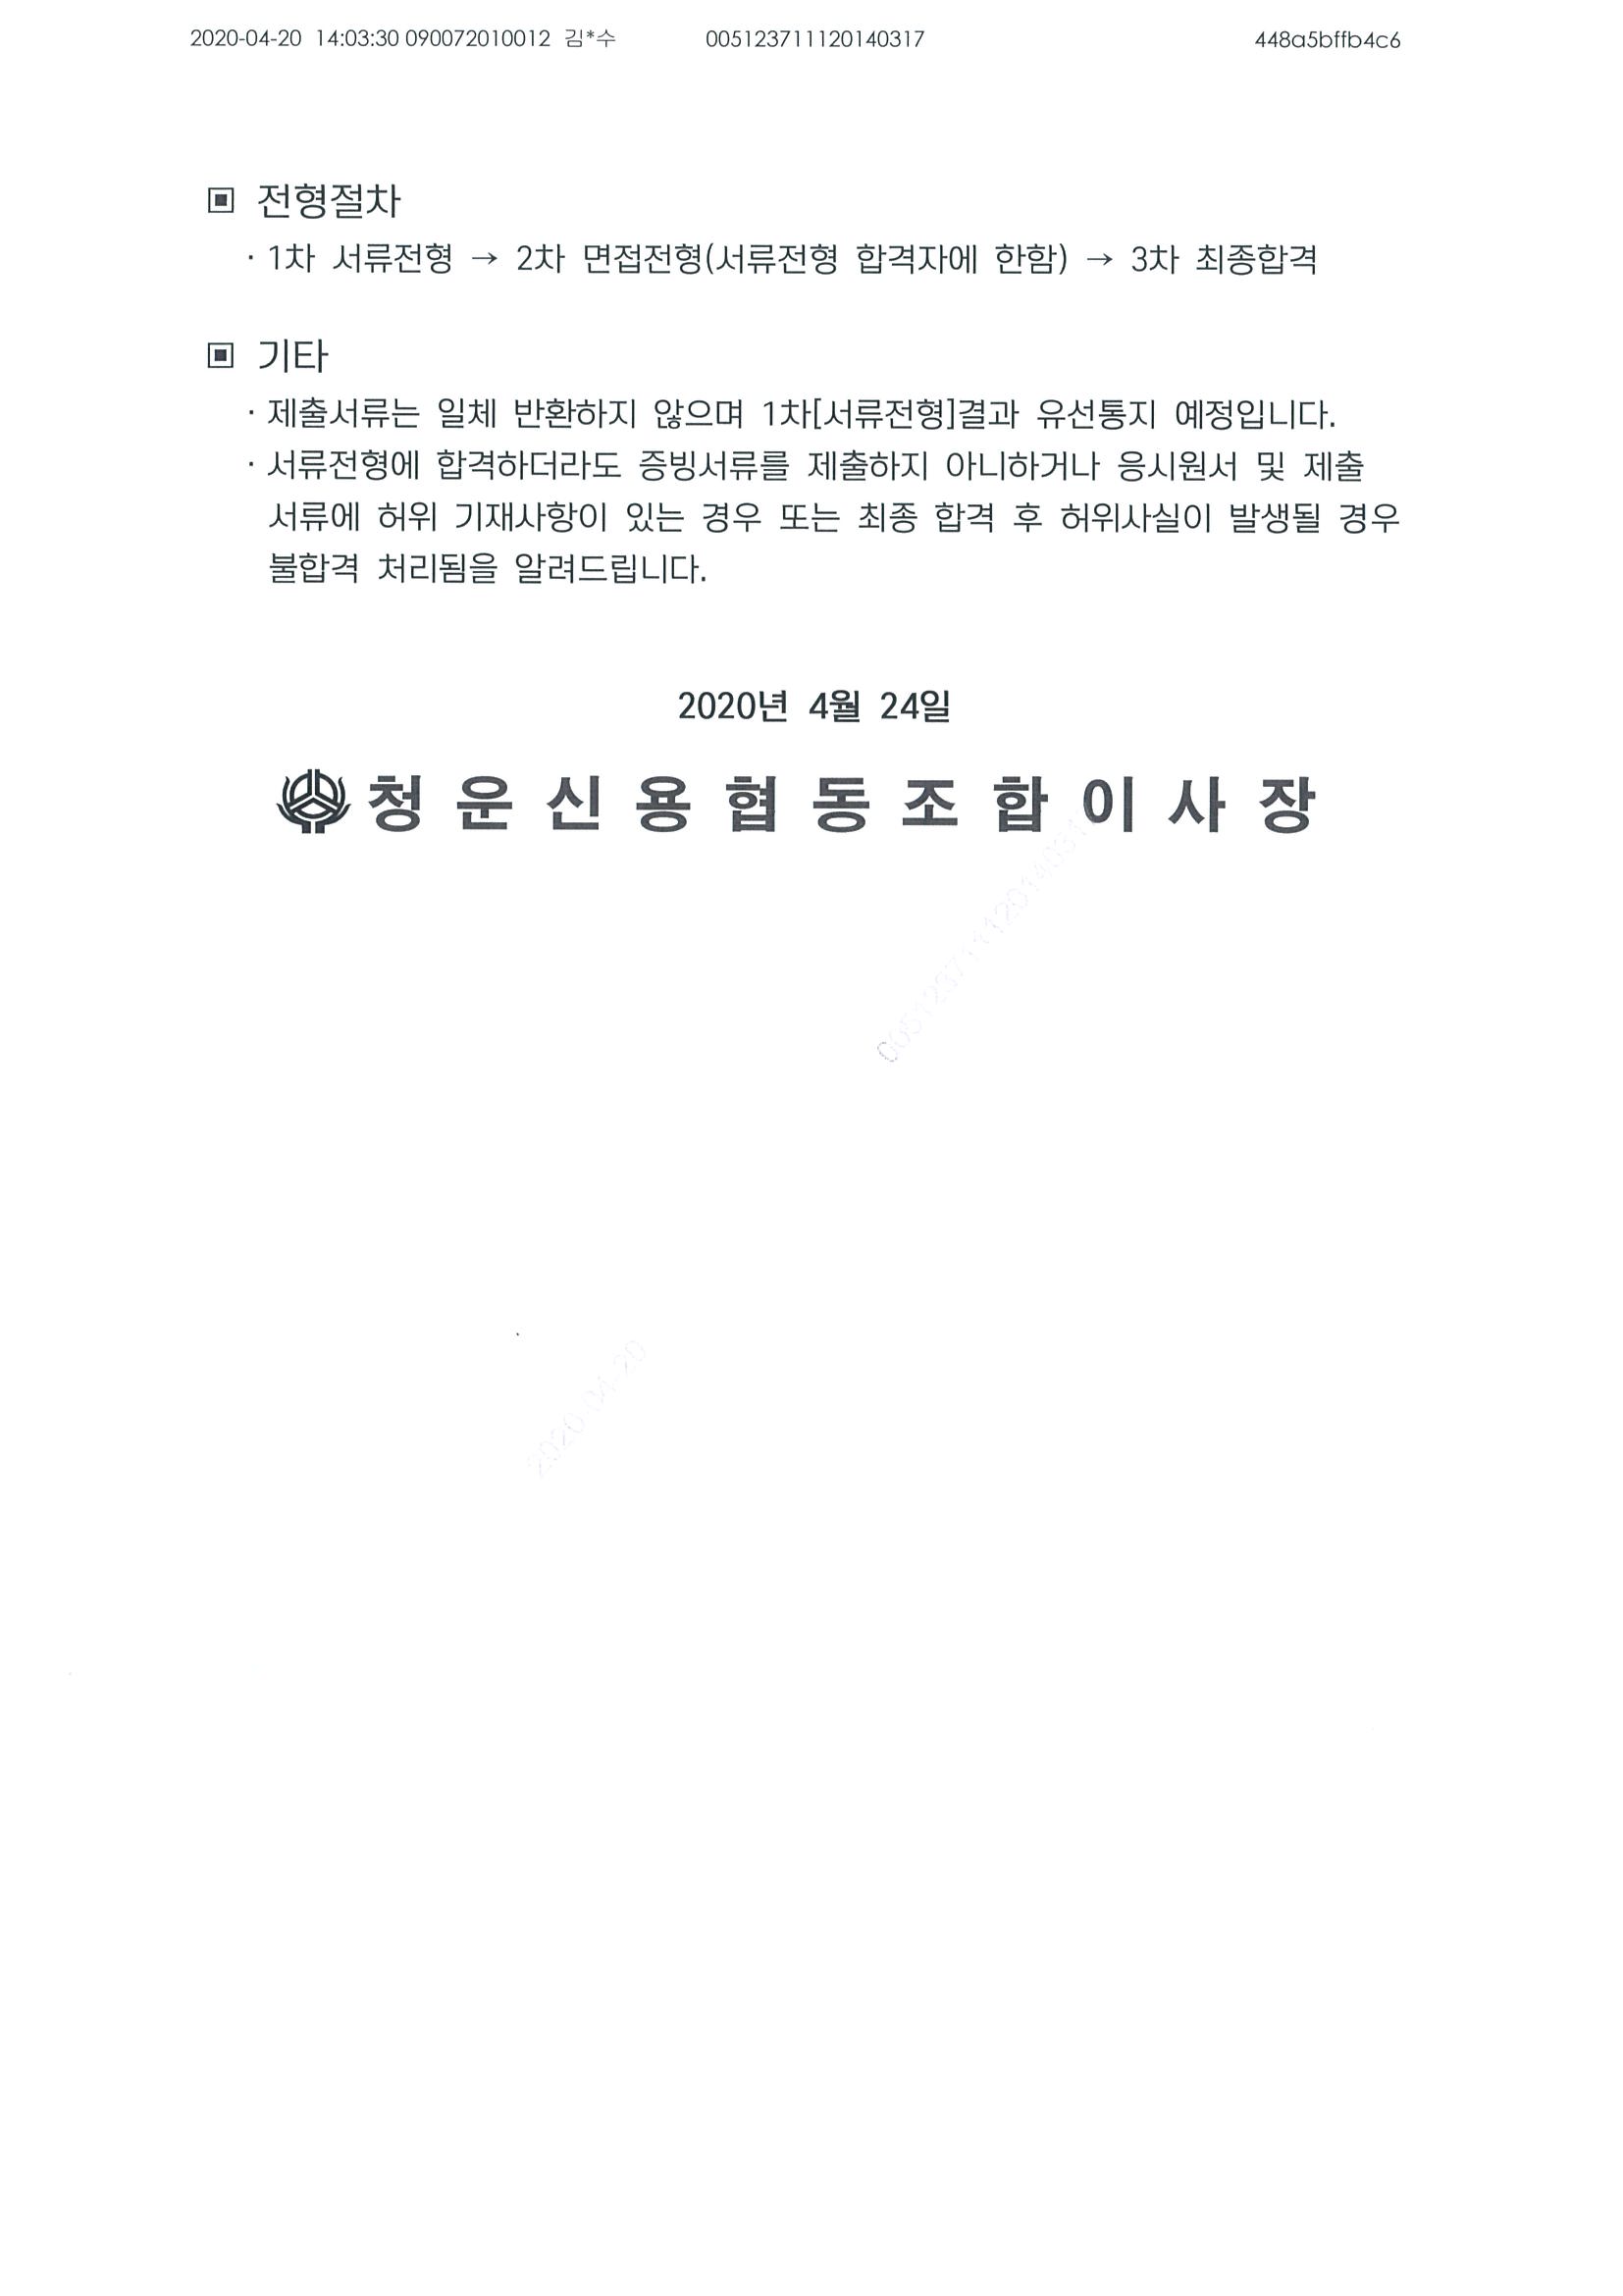 1. 경력직채용공고문(2020.04.24.)_페이지_2.jpg